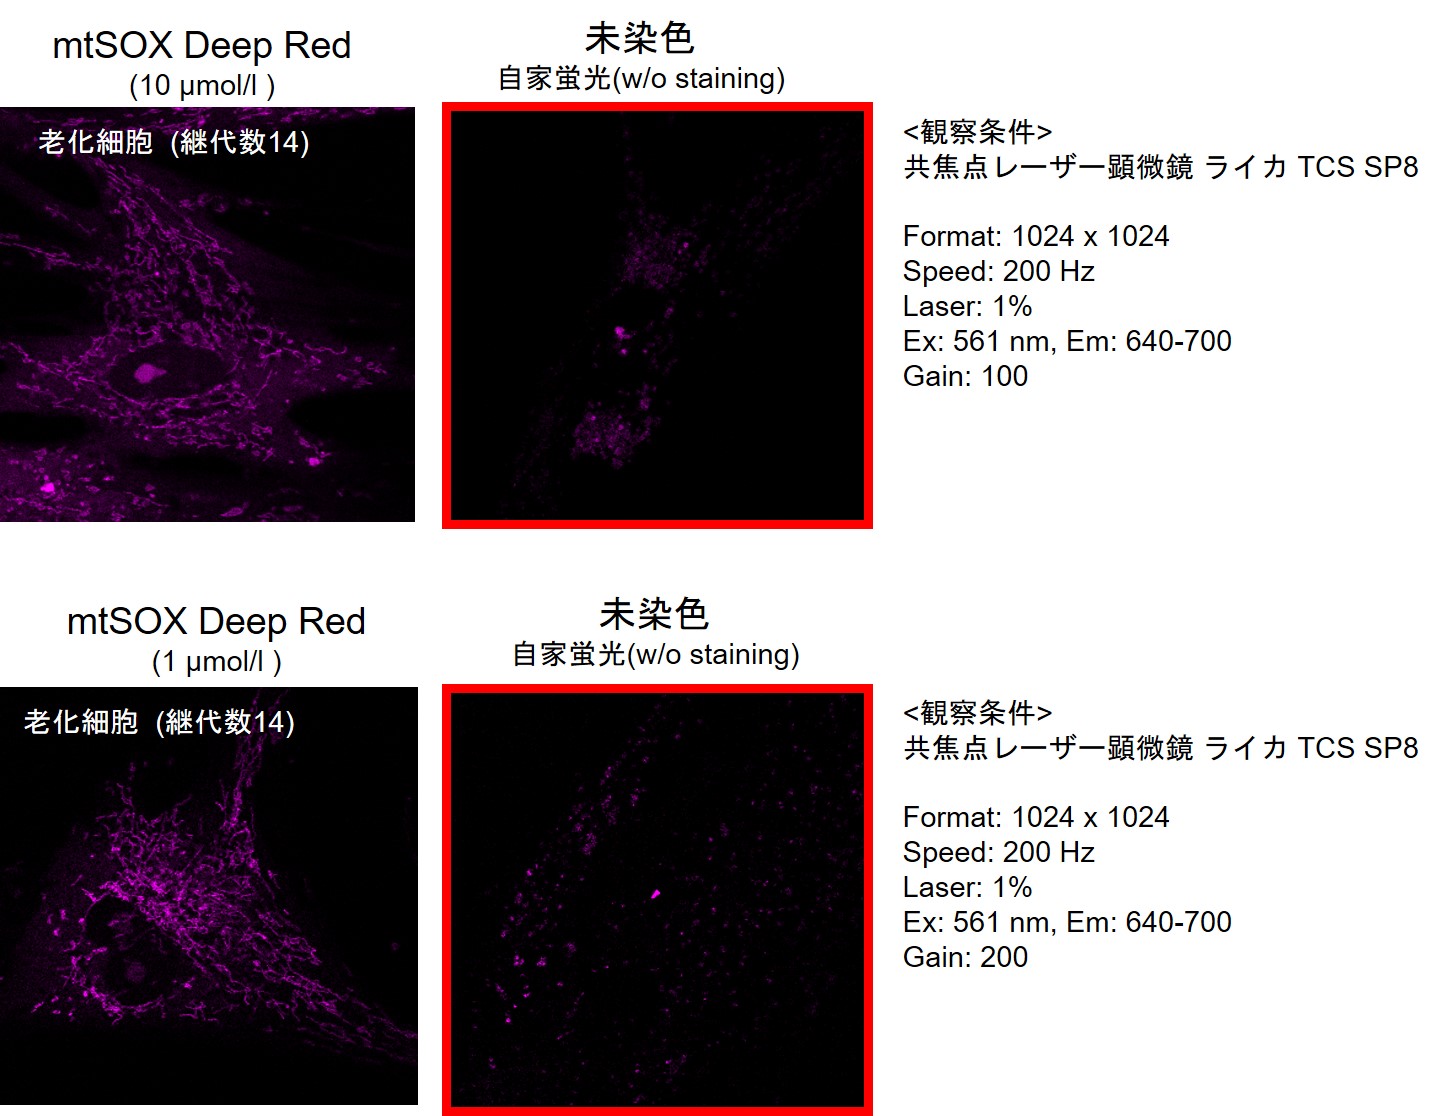 ミトコンドリア スーパーオキサイド検出用蛍光色素 mtSOX Deep Red - Mitochondrial Superoxide Detection 同仁化学研究所